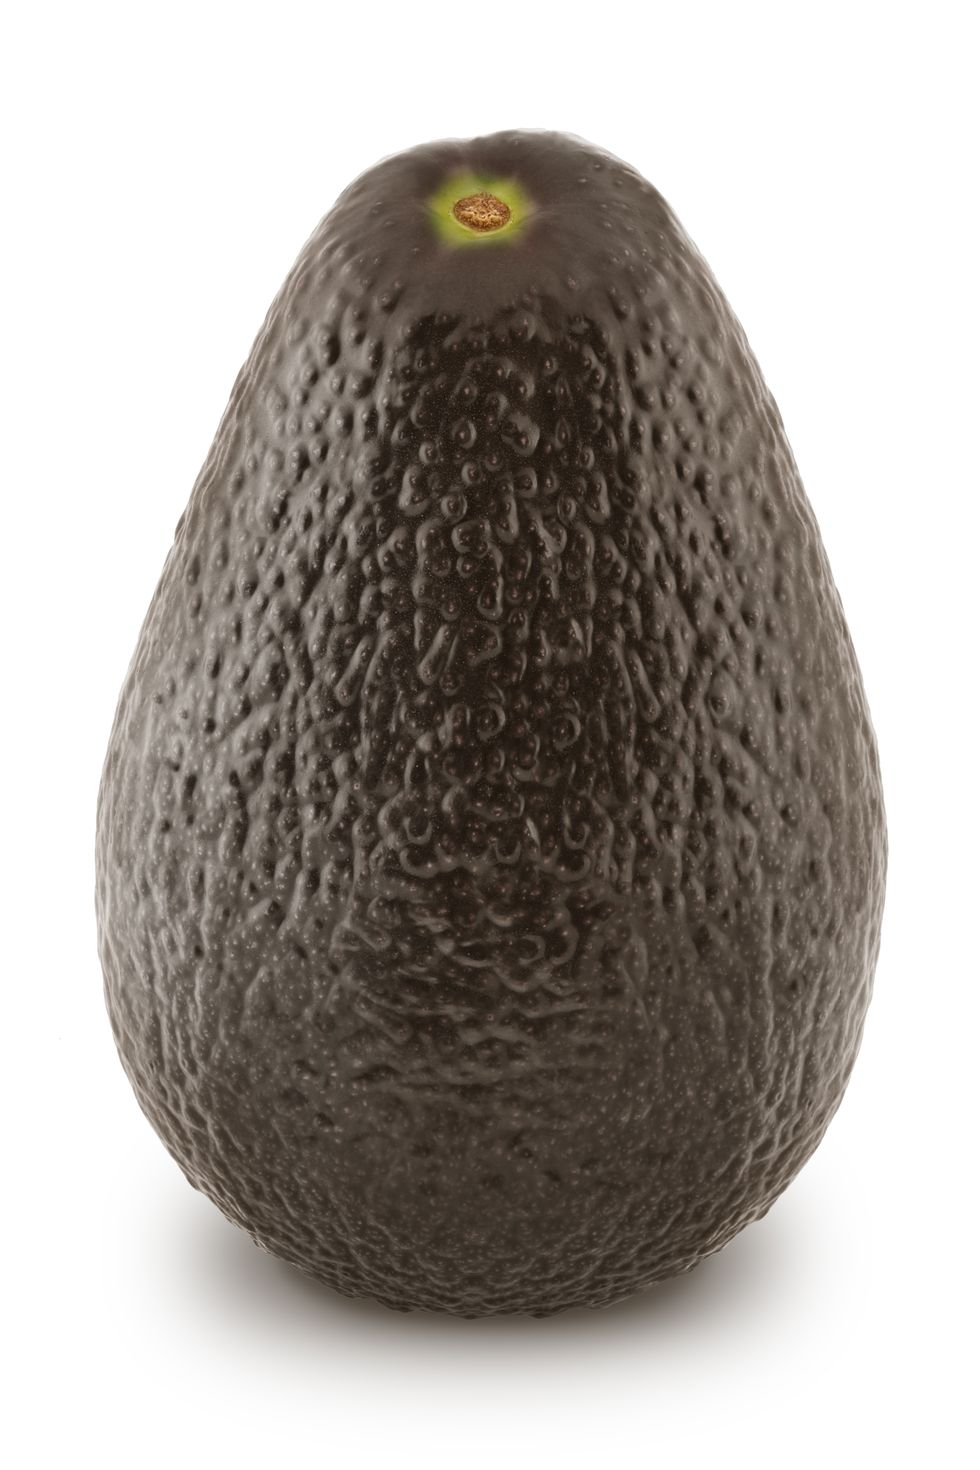 ripe avocado isolated on white background